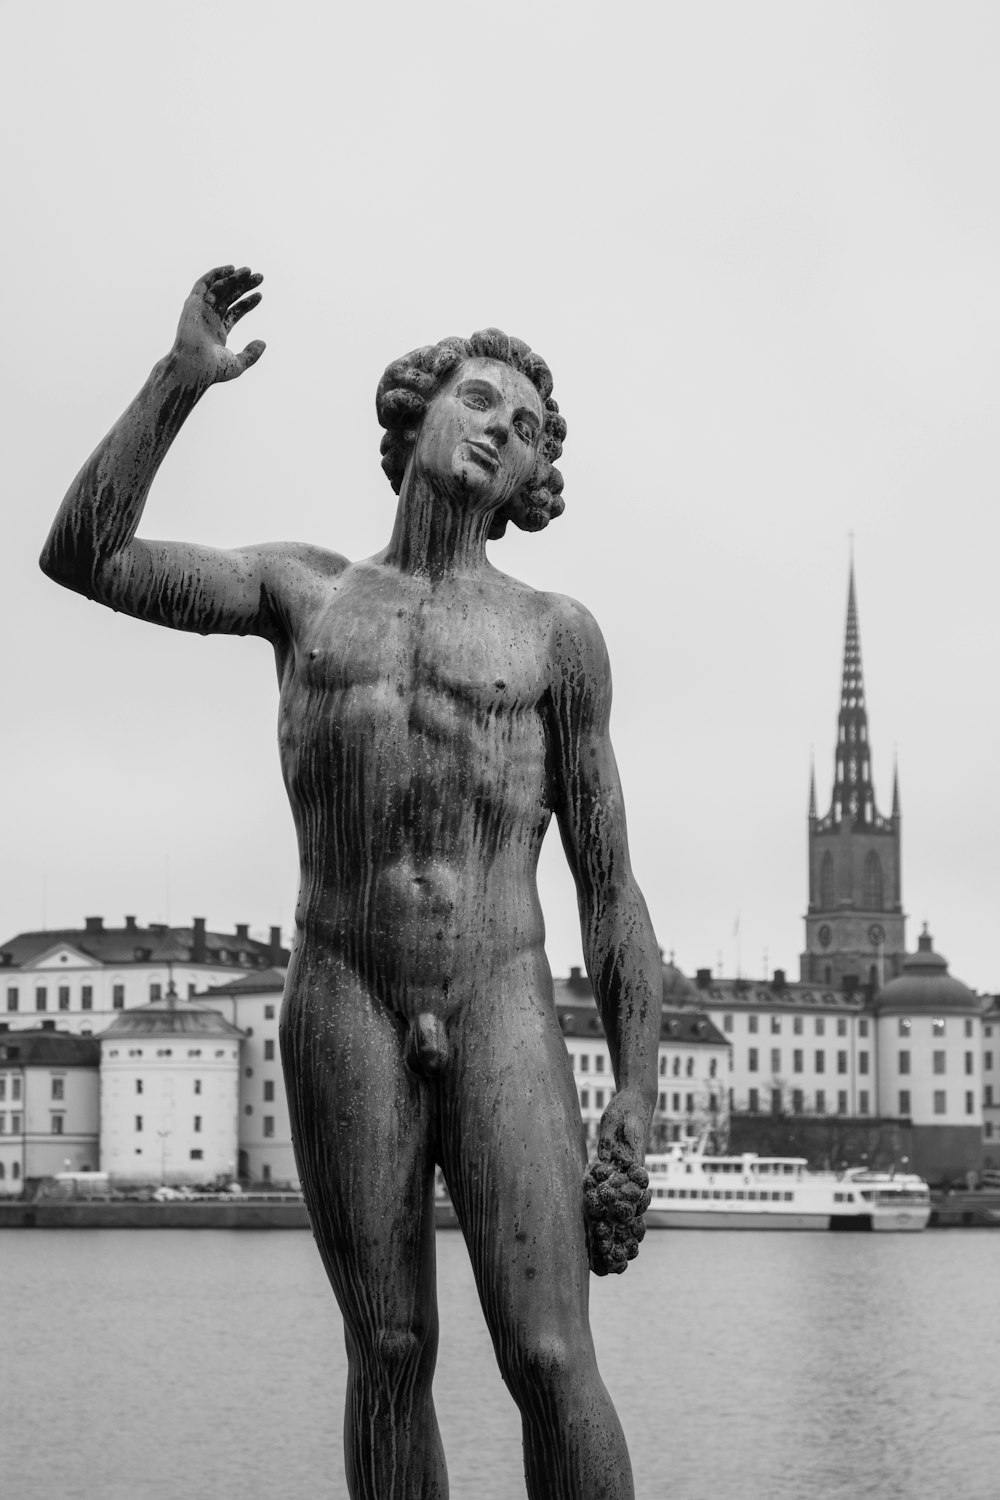 Fotografía en escala de grises de la estatua del hombre en topless